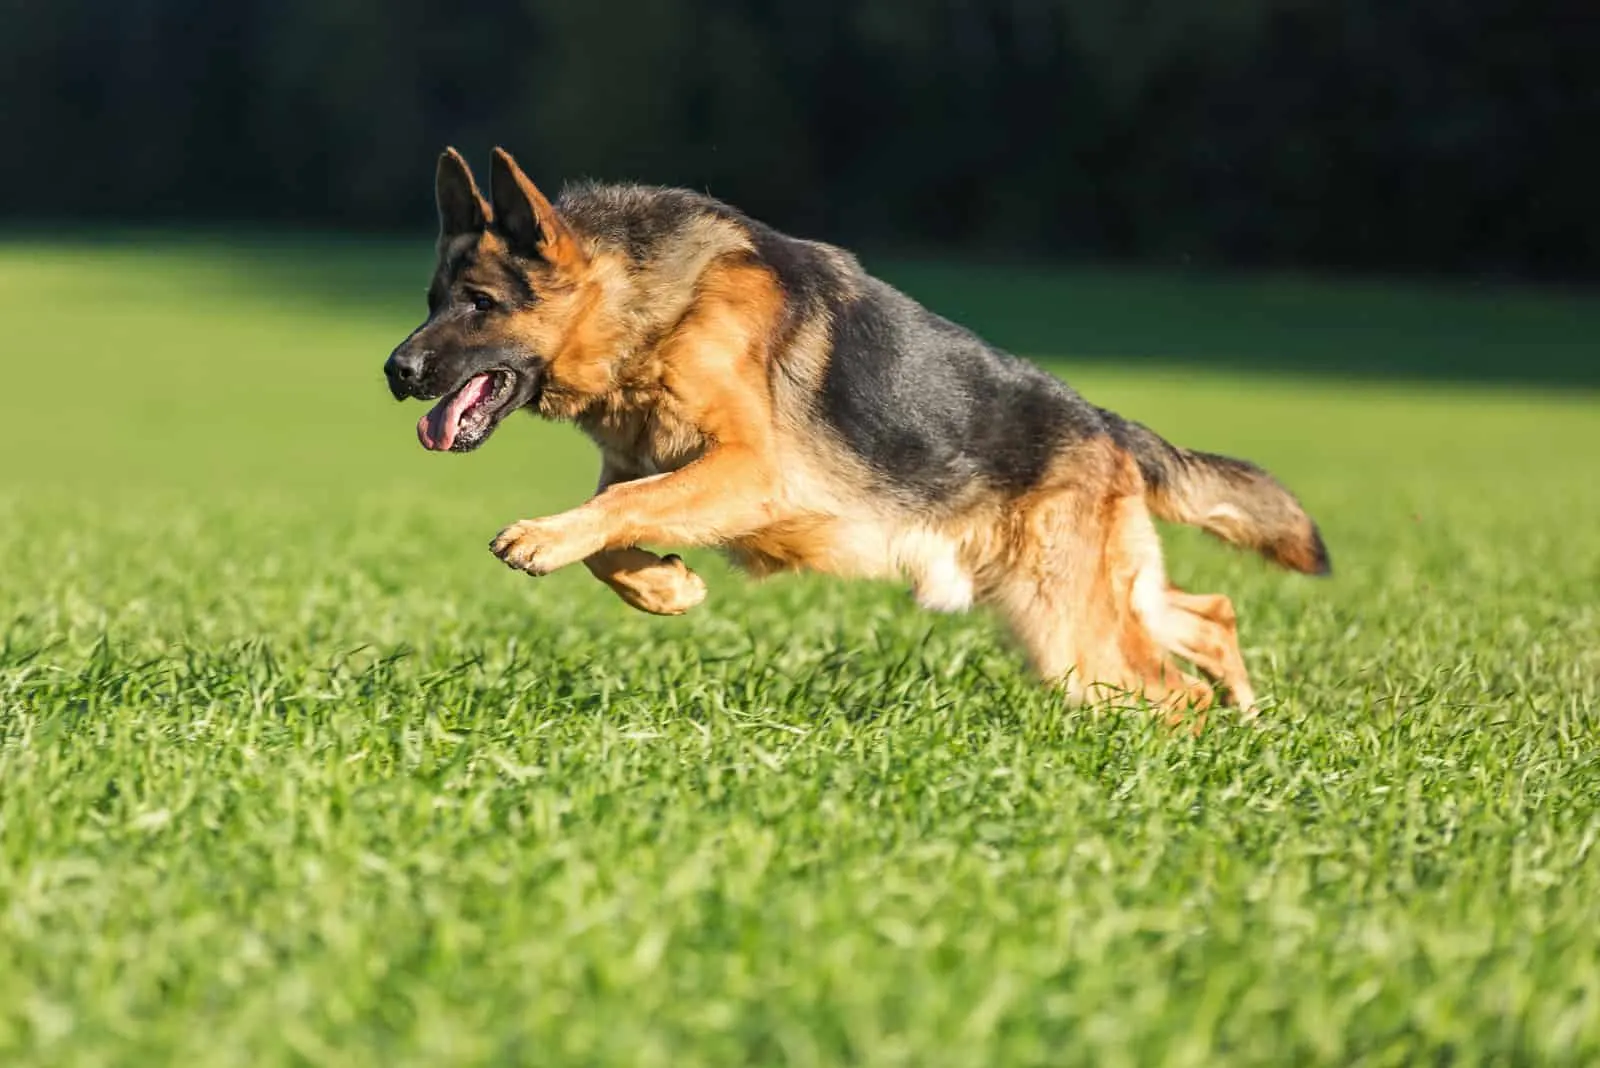 a german shepherd runs across the grass